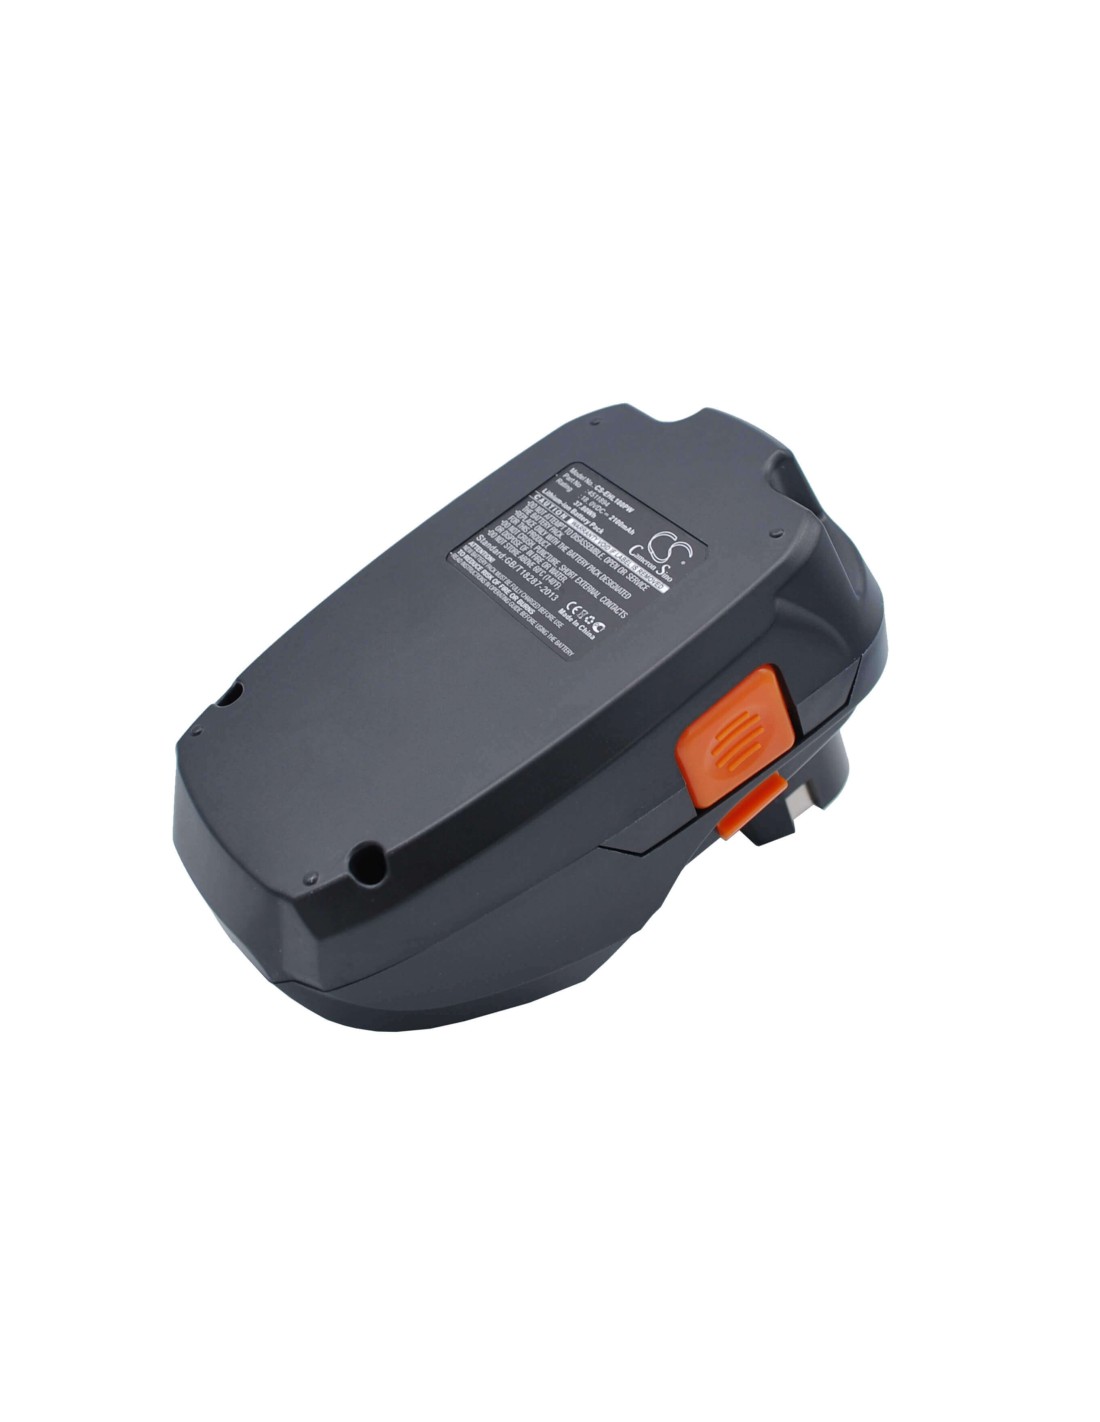 Battery for Einhell Rt-cd18i, Rt-cd18i Hammer Drill, 18V, 2100mAh - 37.80Wh